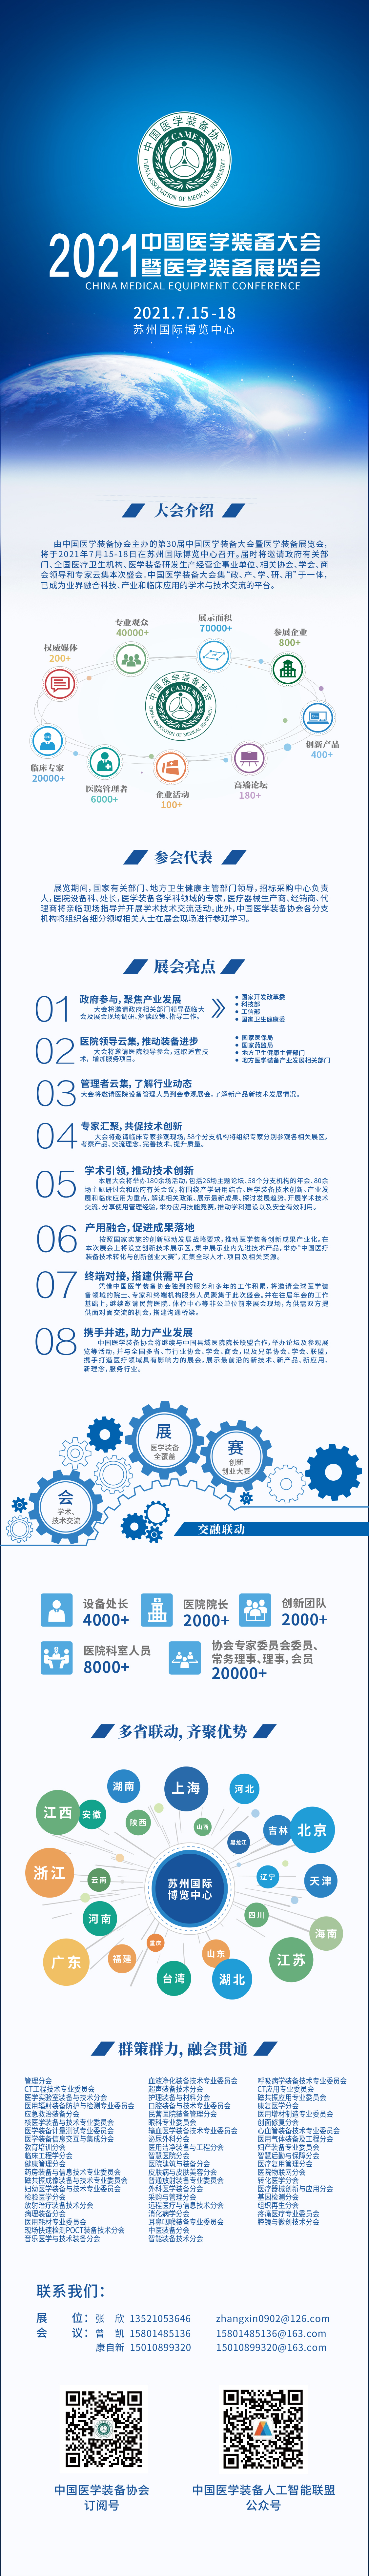 中国医学装备大会暨2021医学装备展览会(图1)